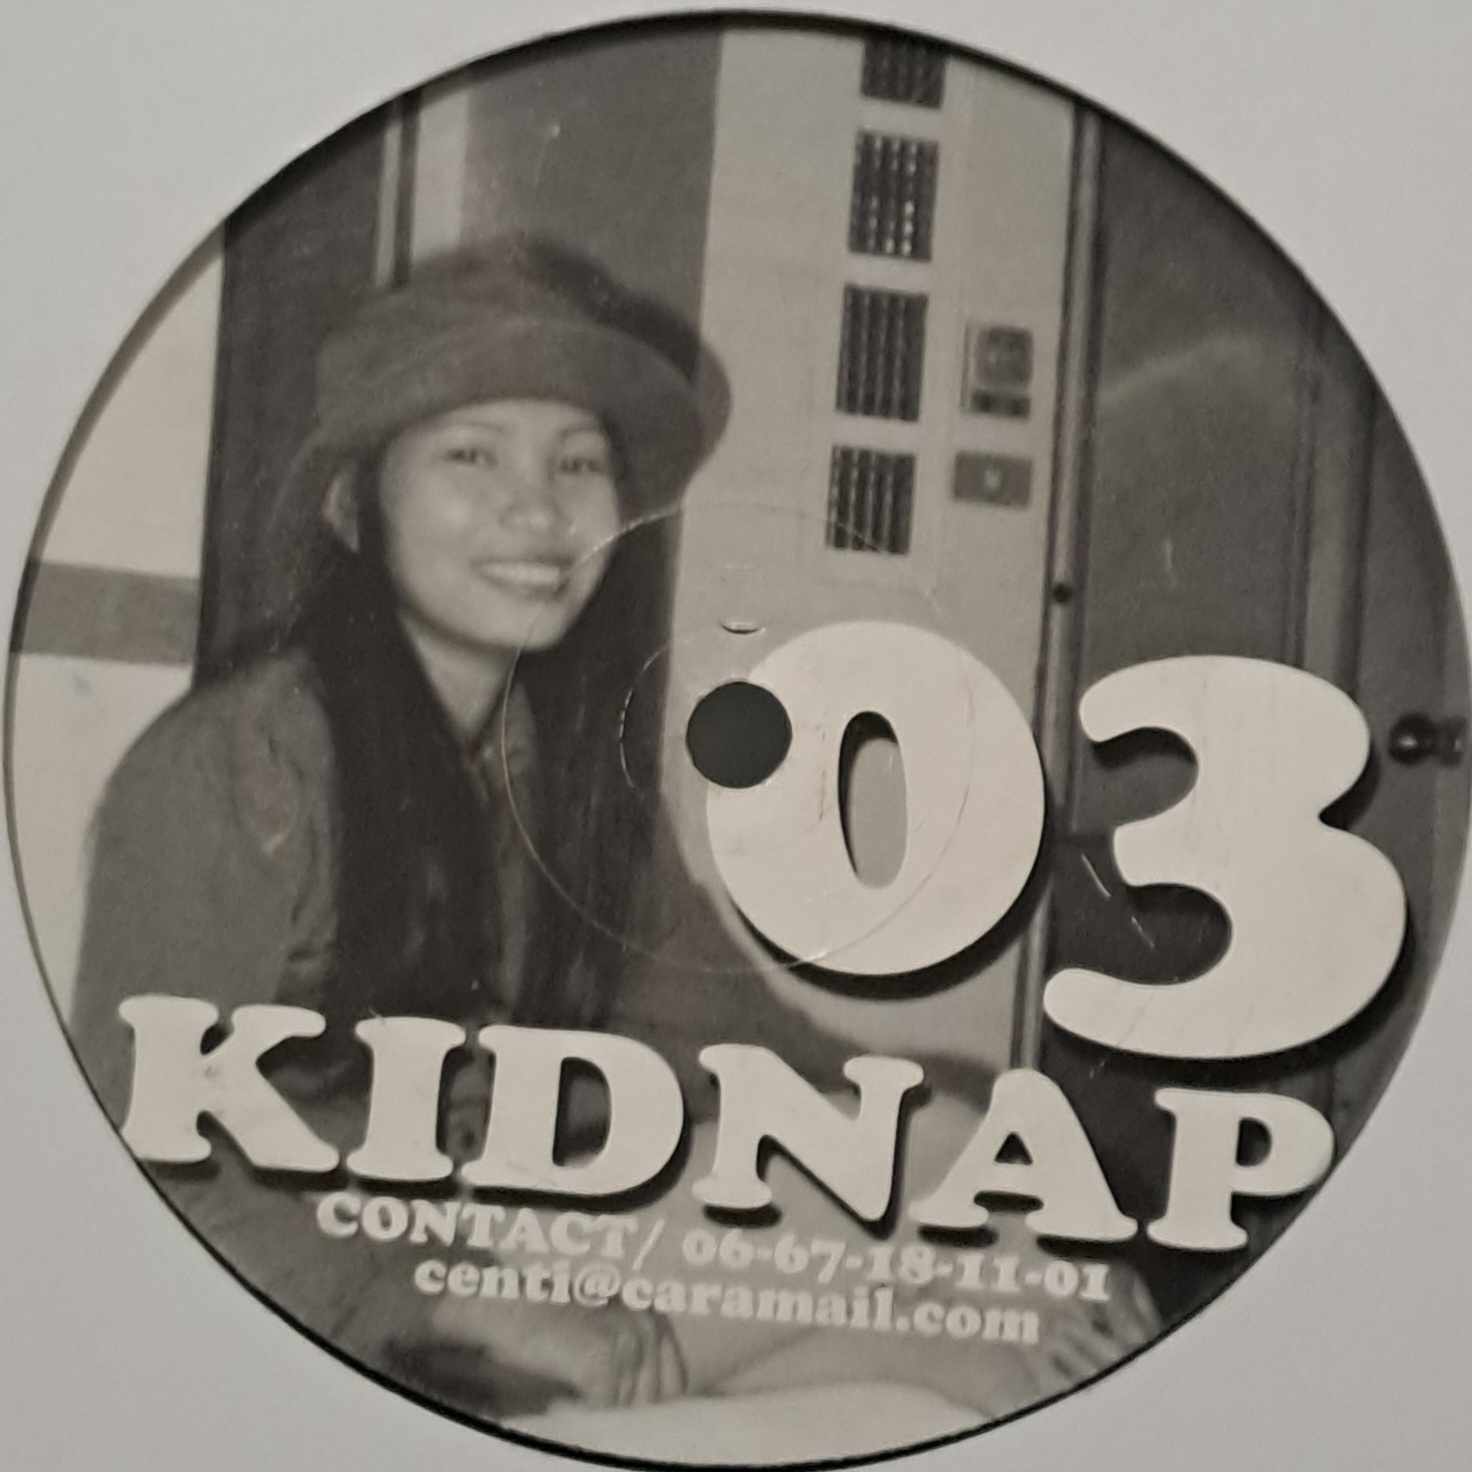 Kidnap 03 - vinyle freetekno